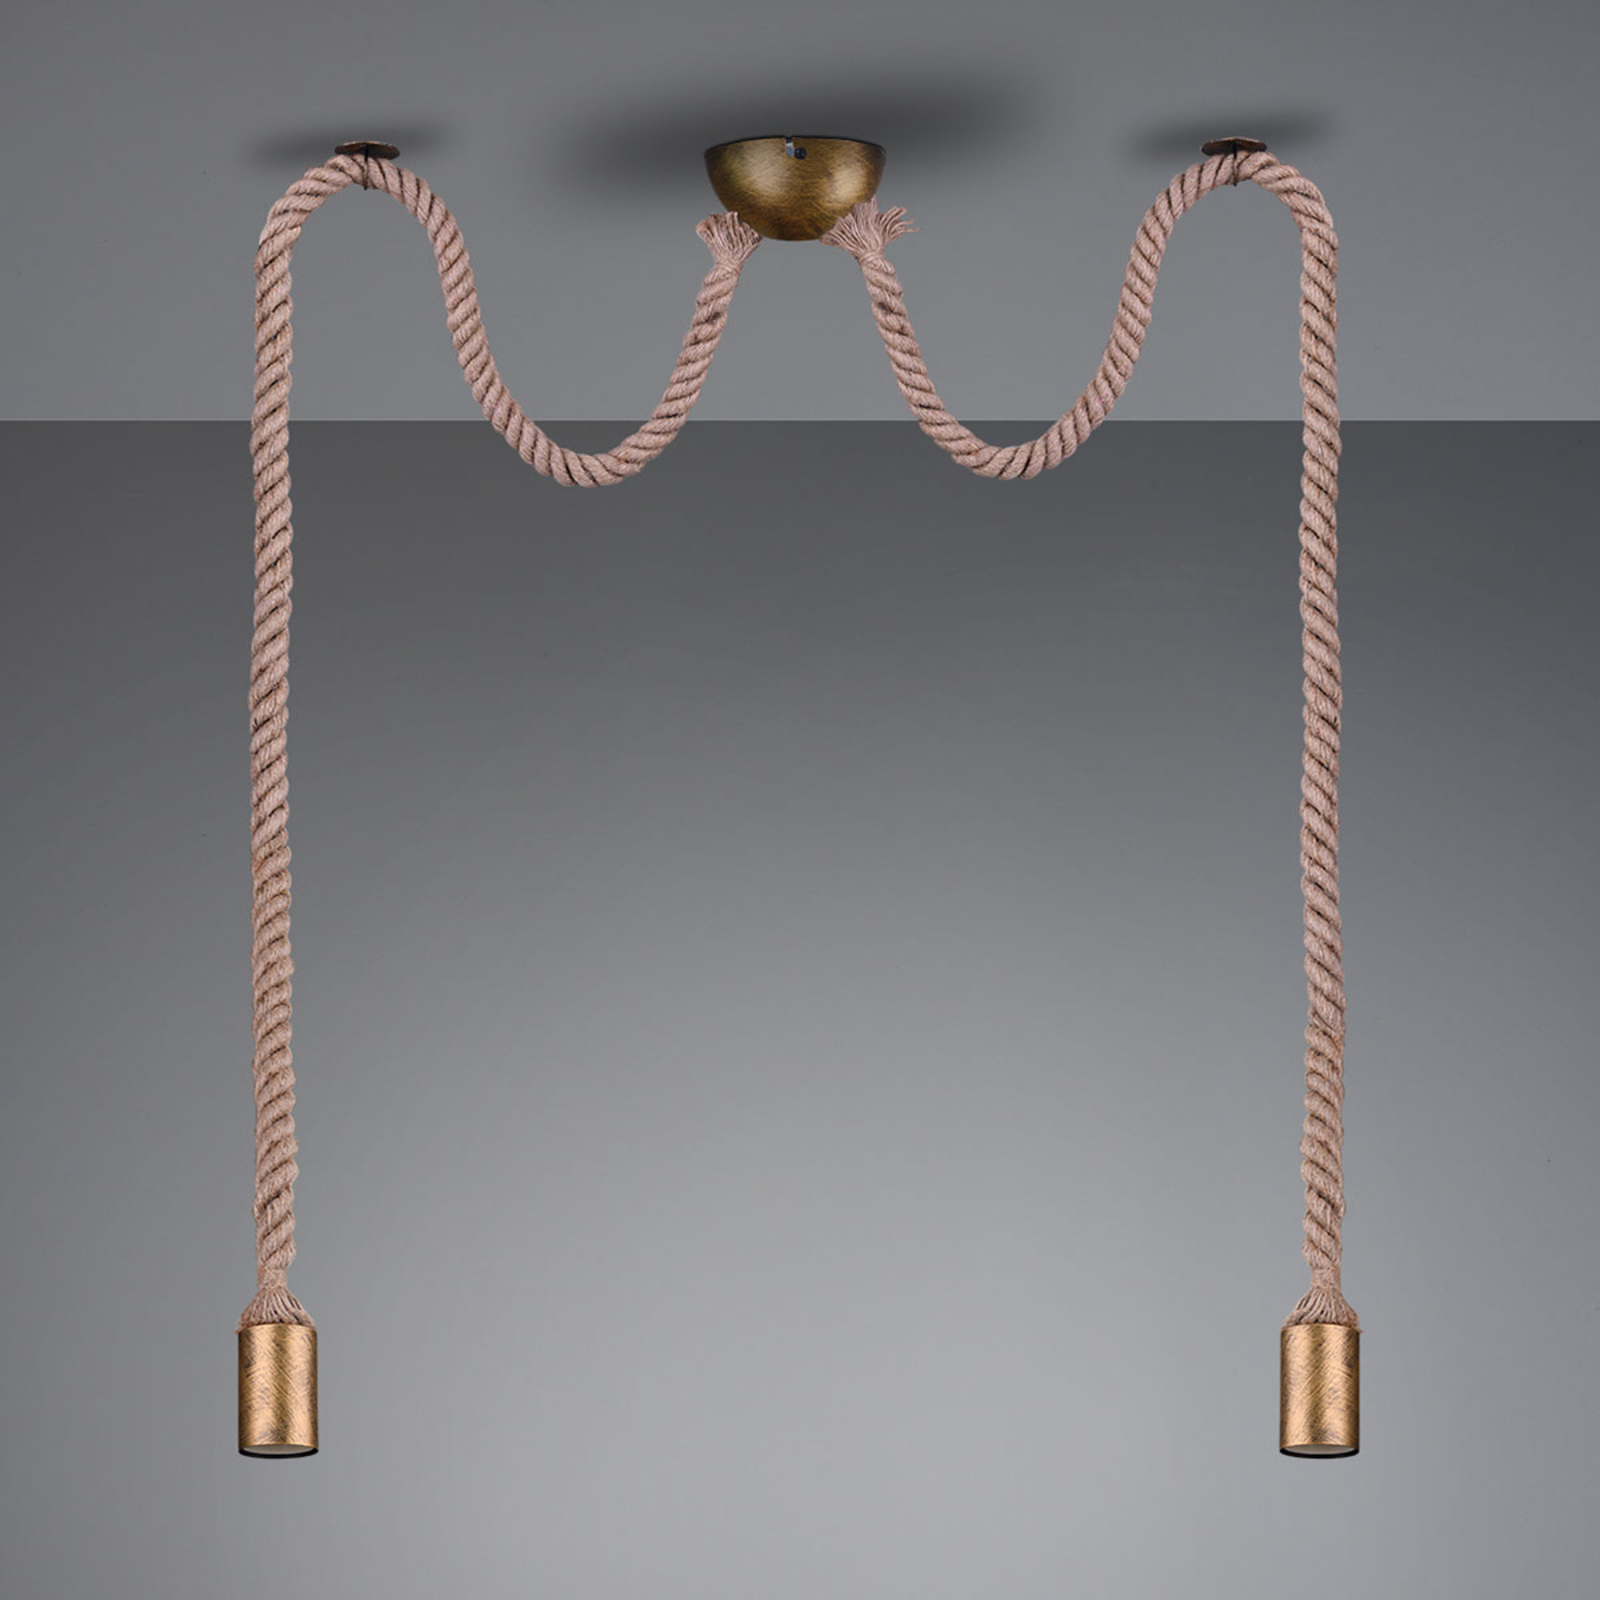 Hanglamp Rope met decoratieve kabel, 2-lamp